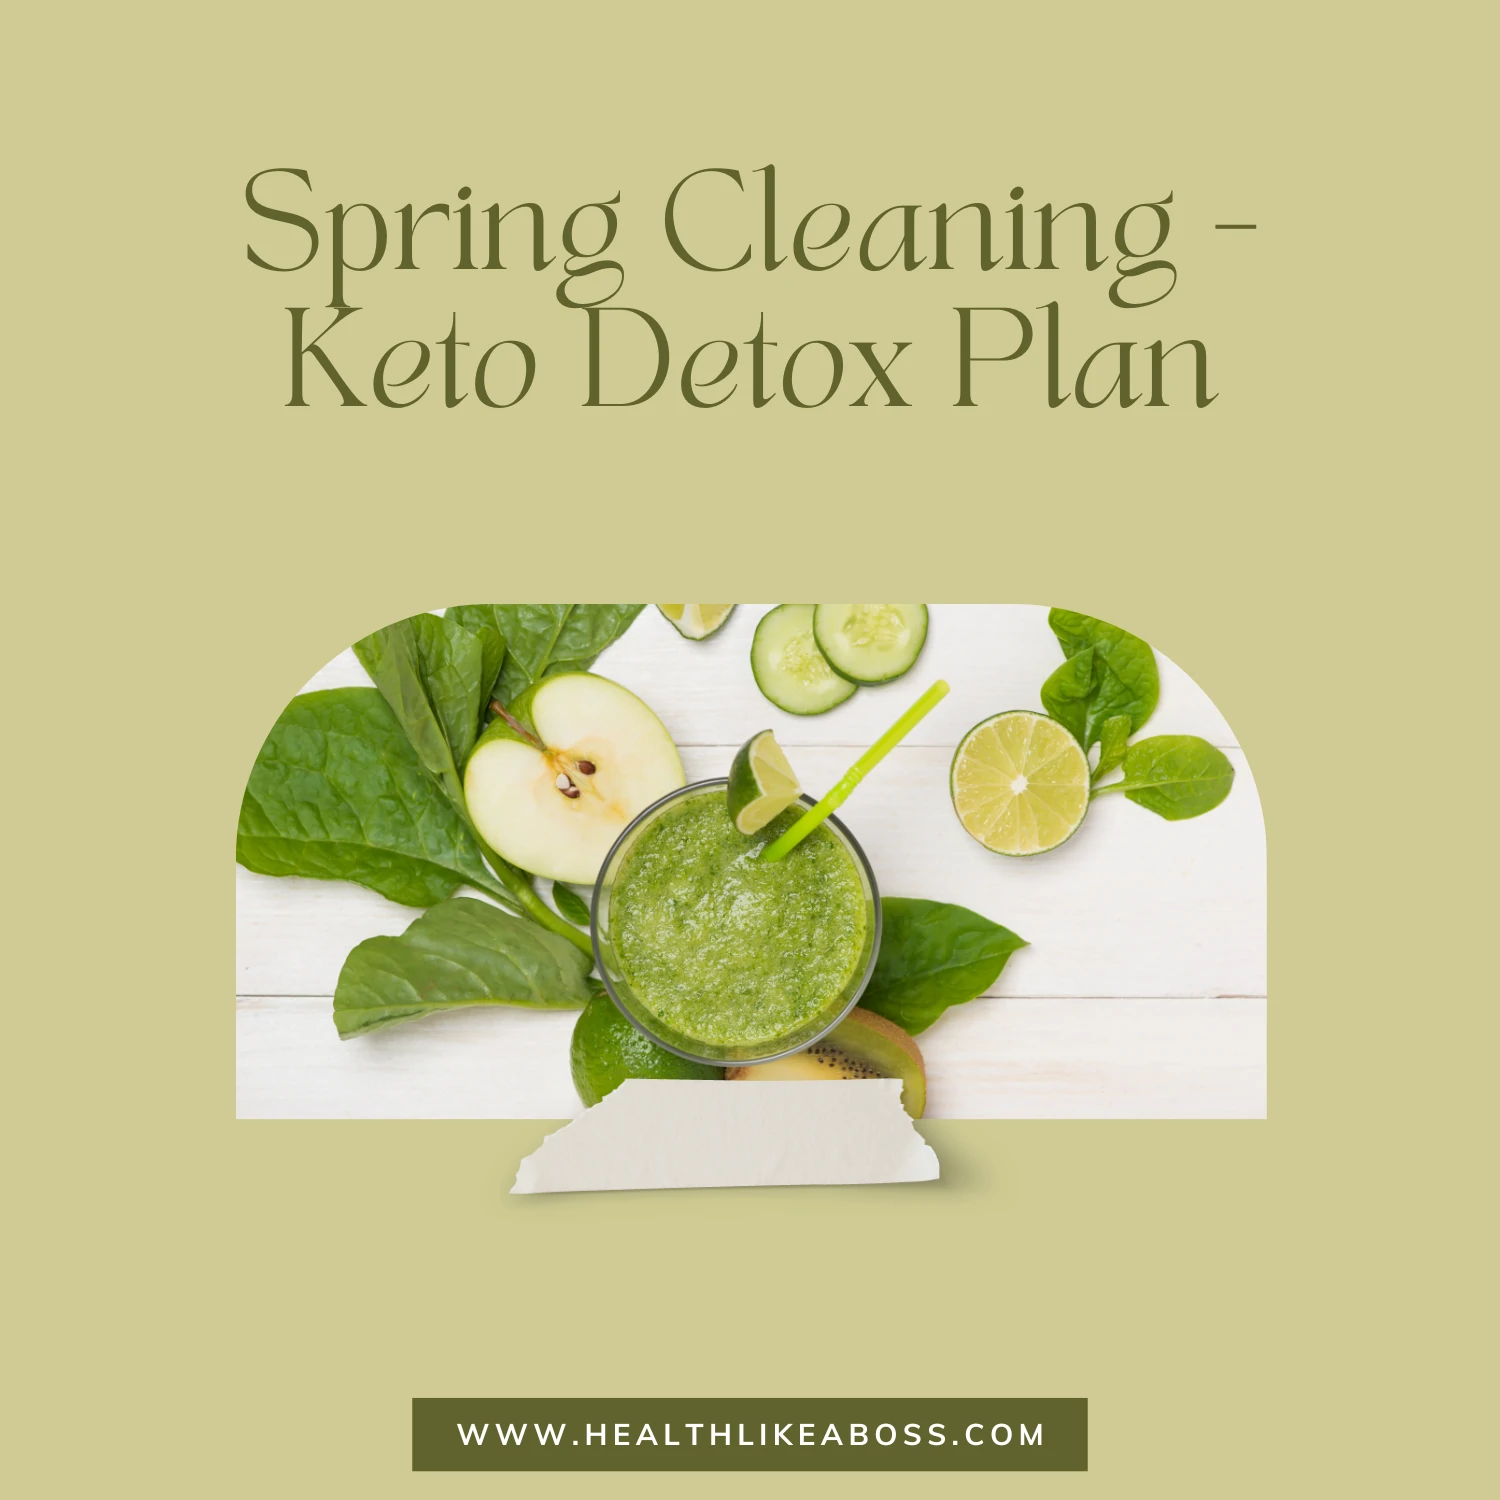 Spring Cleaning - Keto Detox Plan